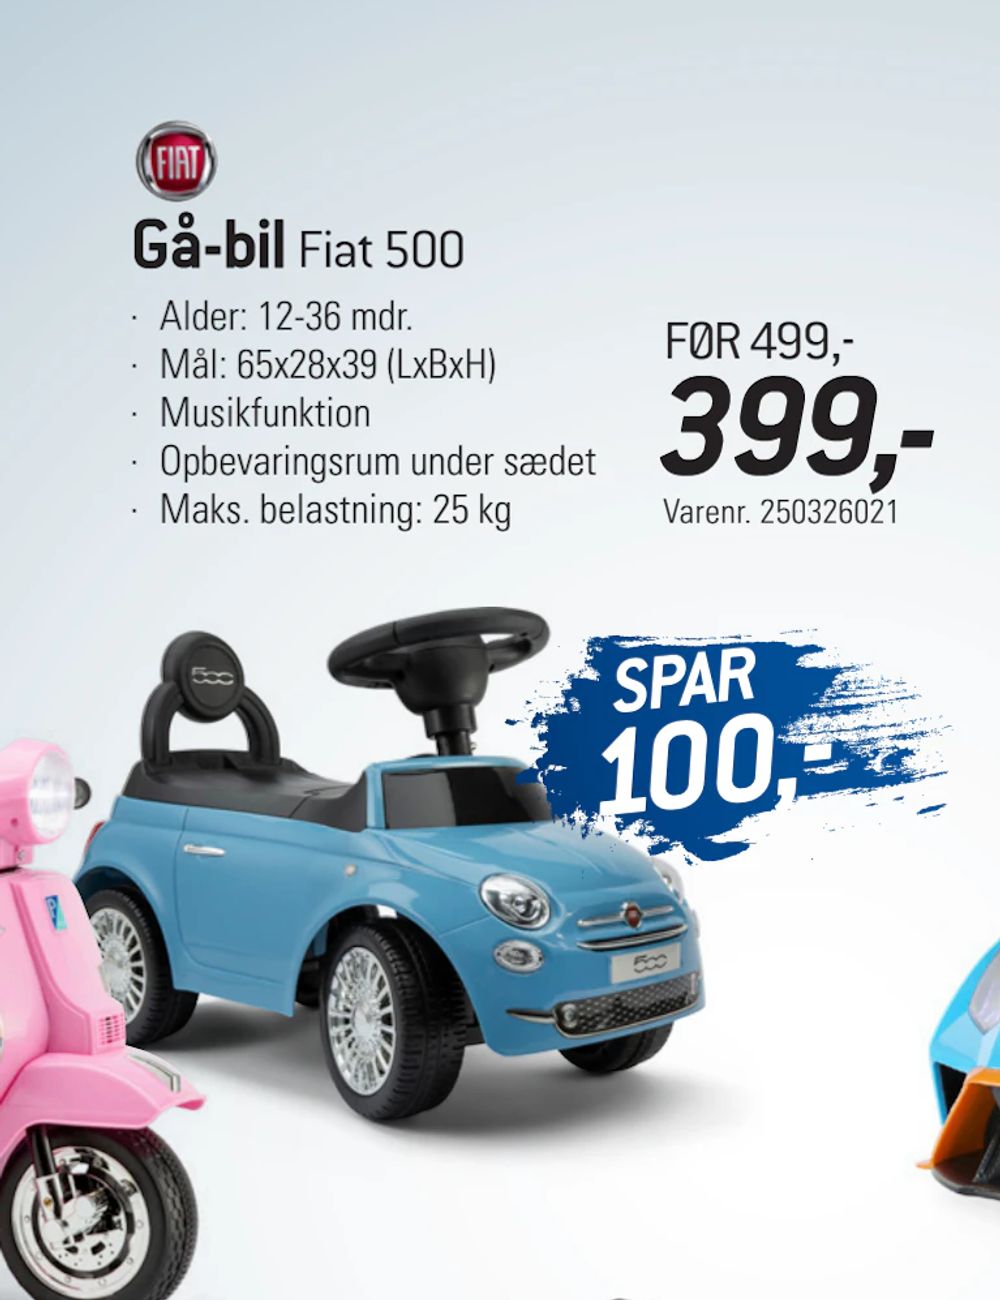 Tilbud på Gå-bil Fiat 500 fra thansen til 399 kr.